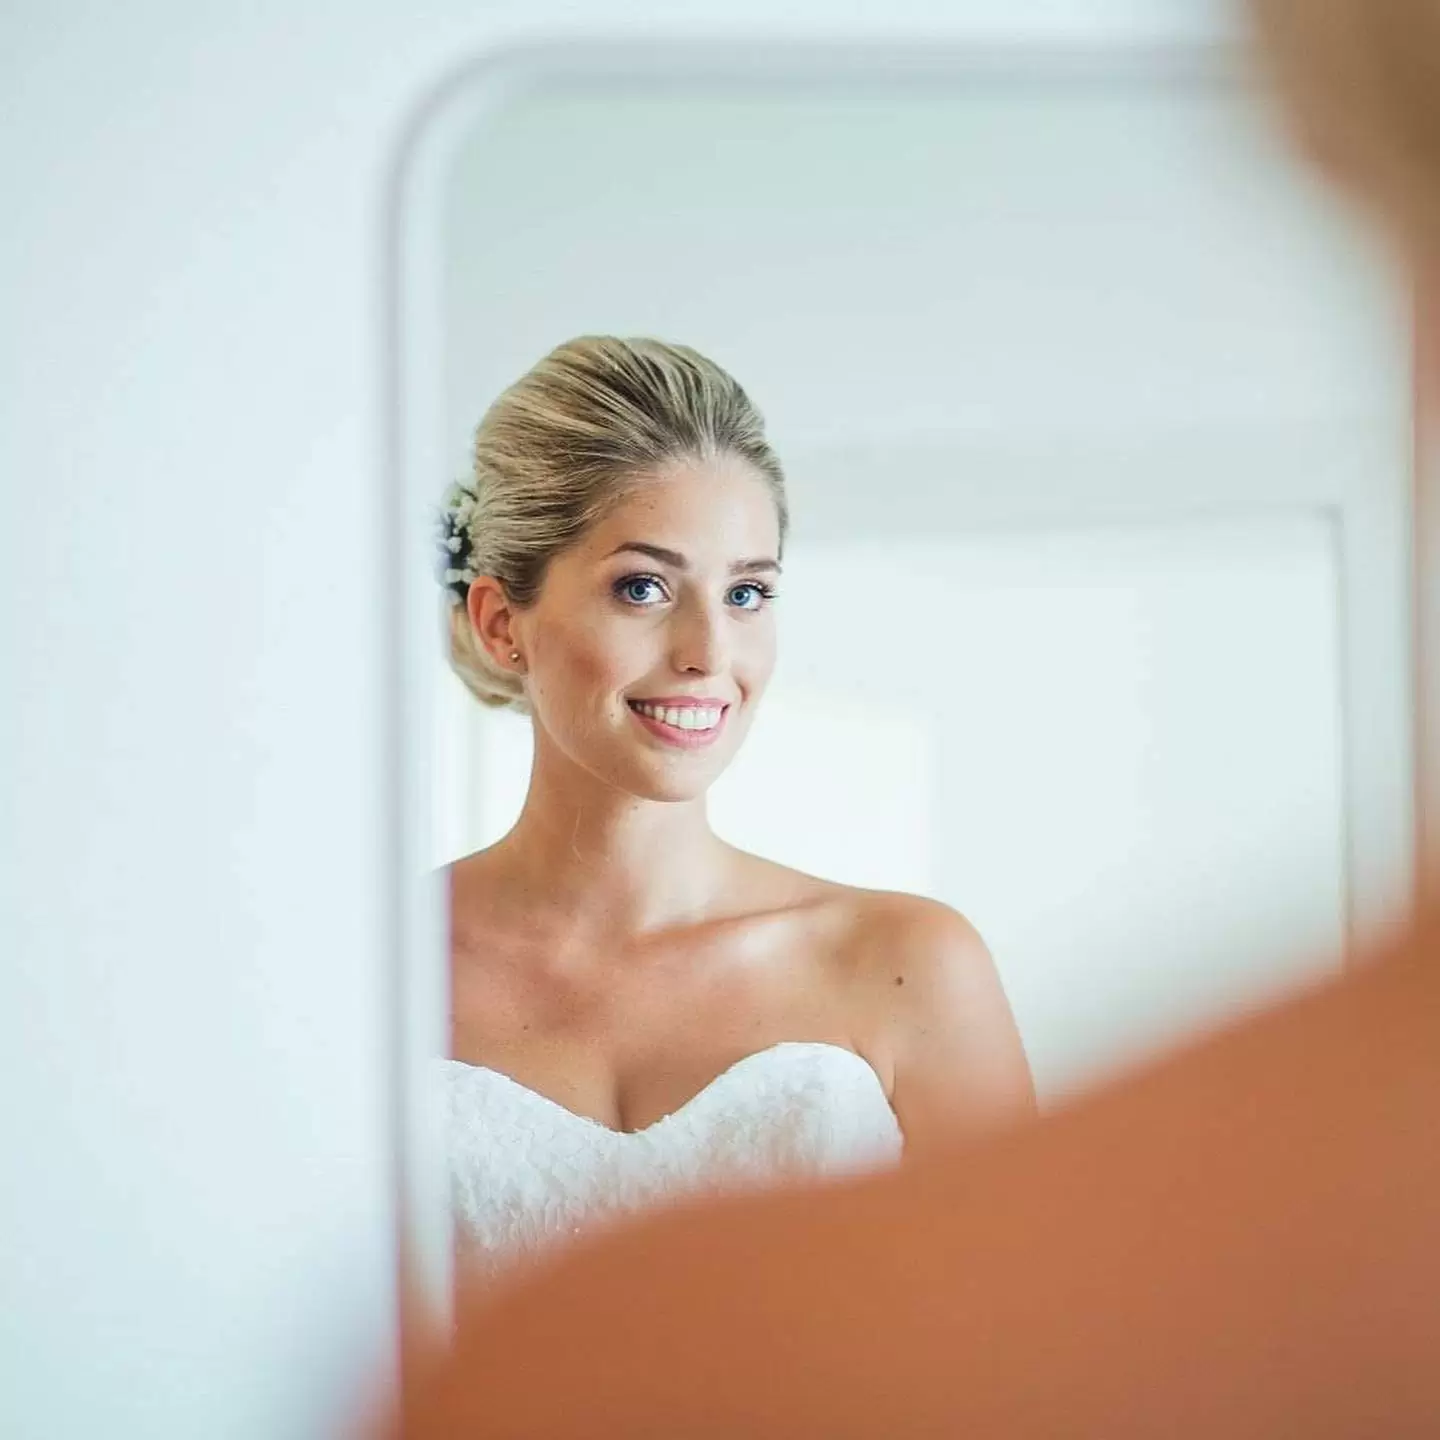 Фото. Невеста смотрит на свой образ через зеркало смартфона.